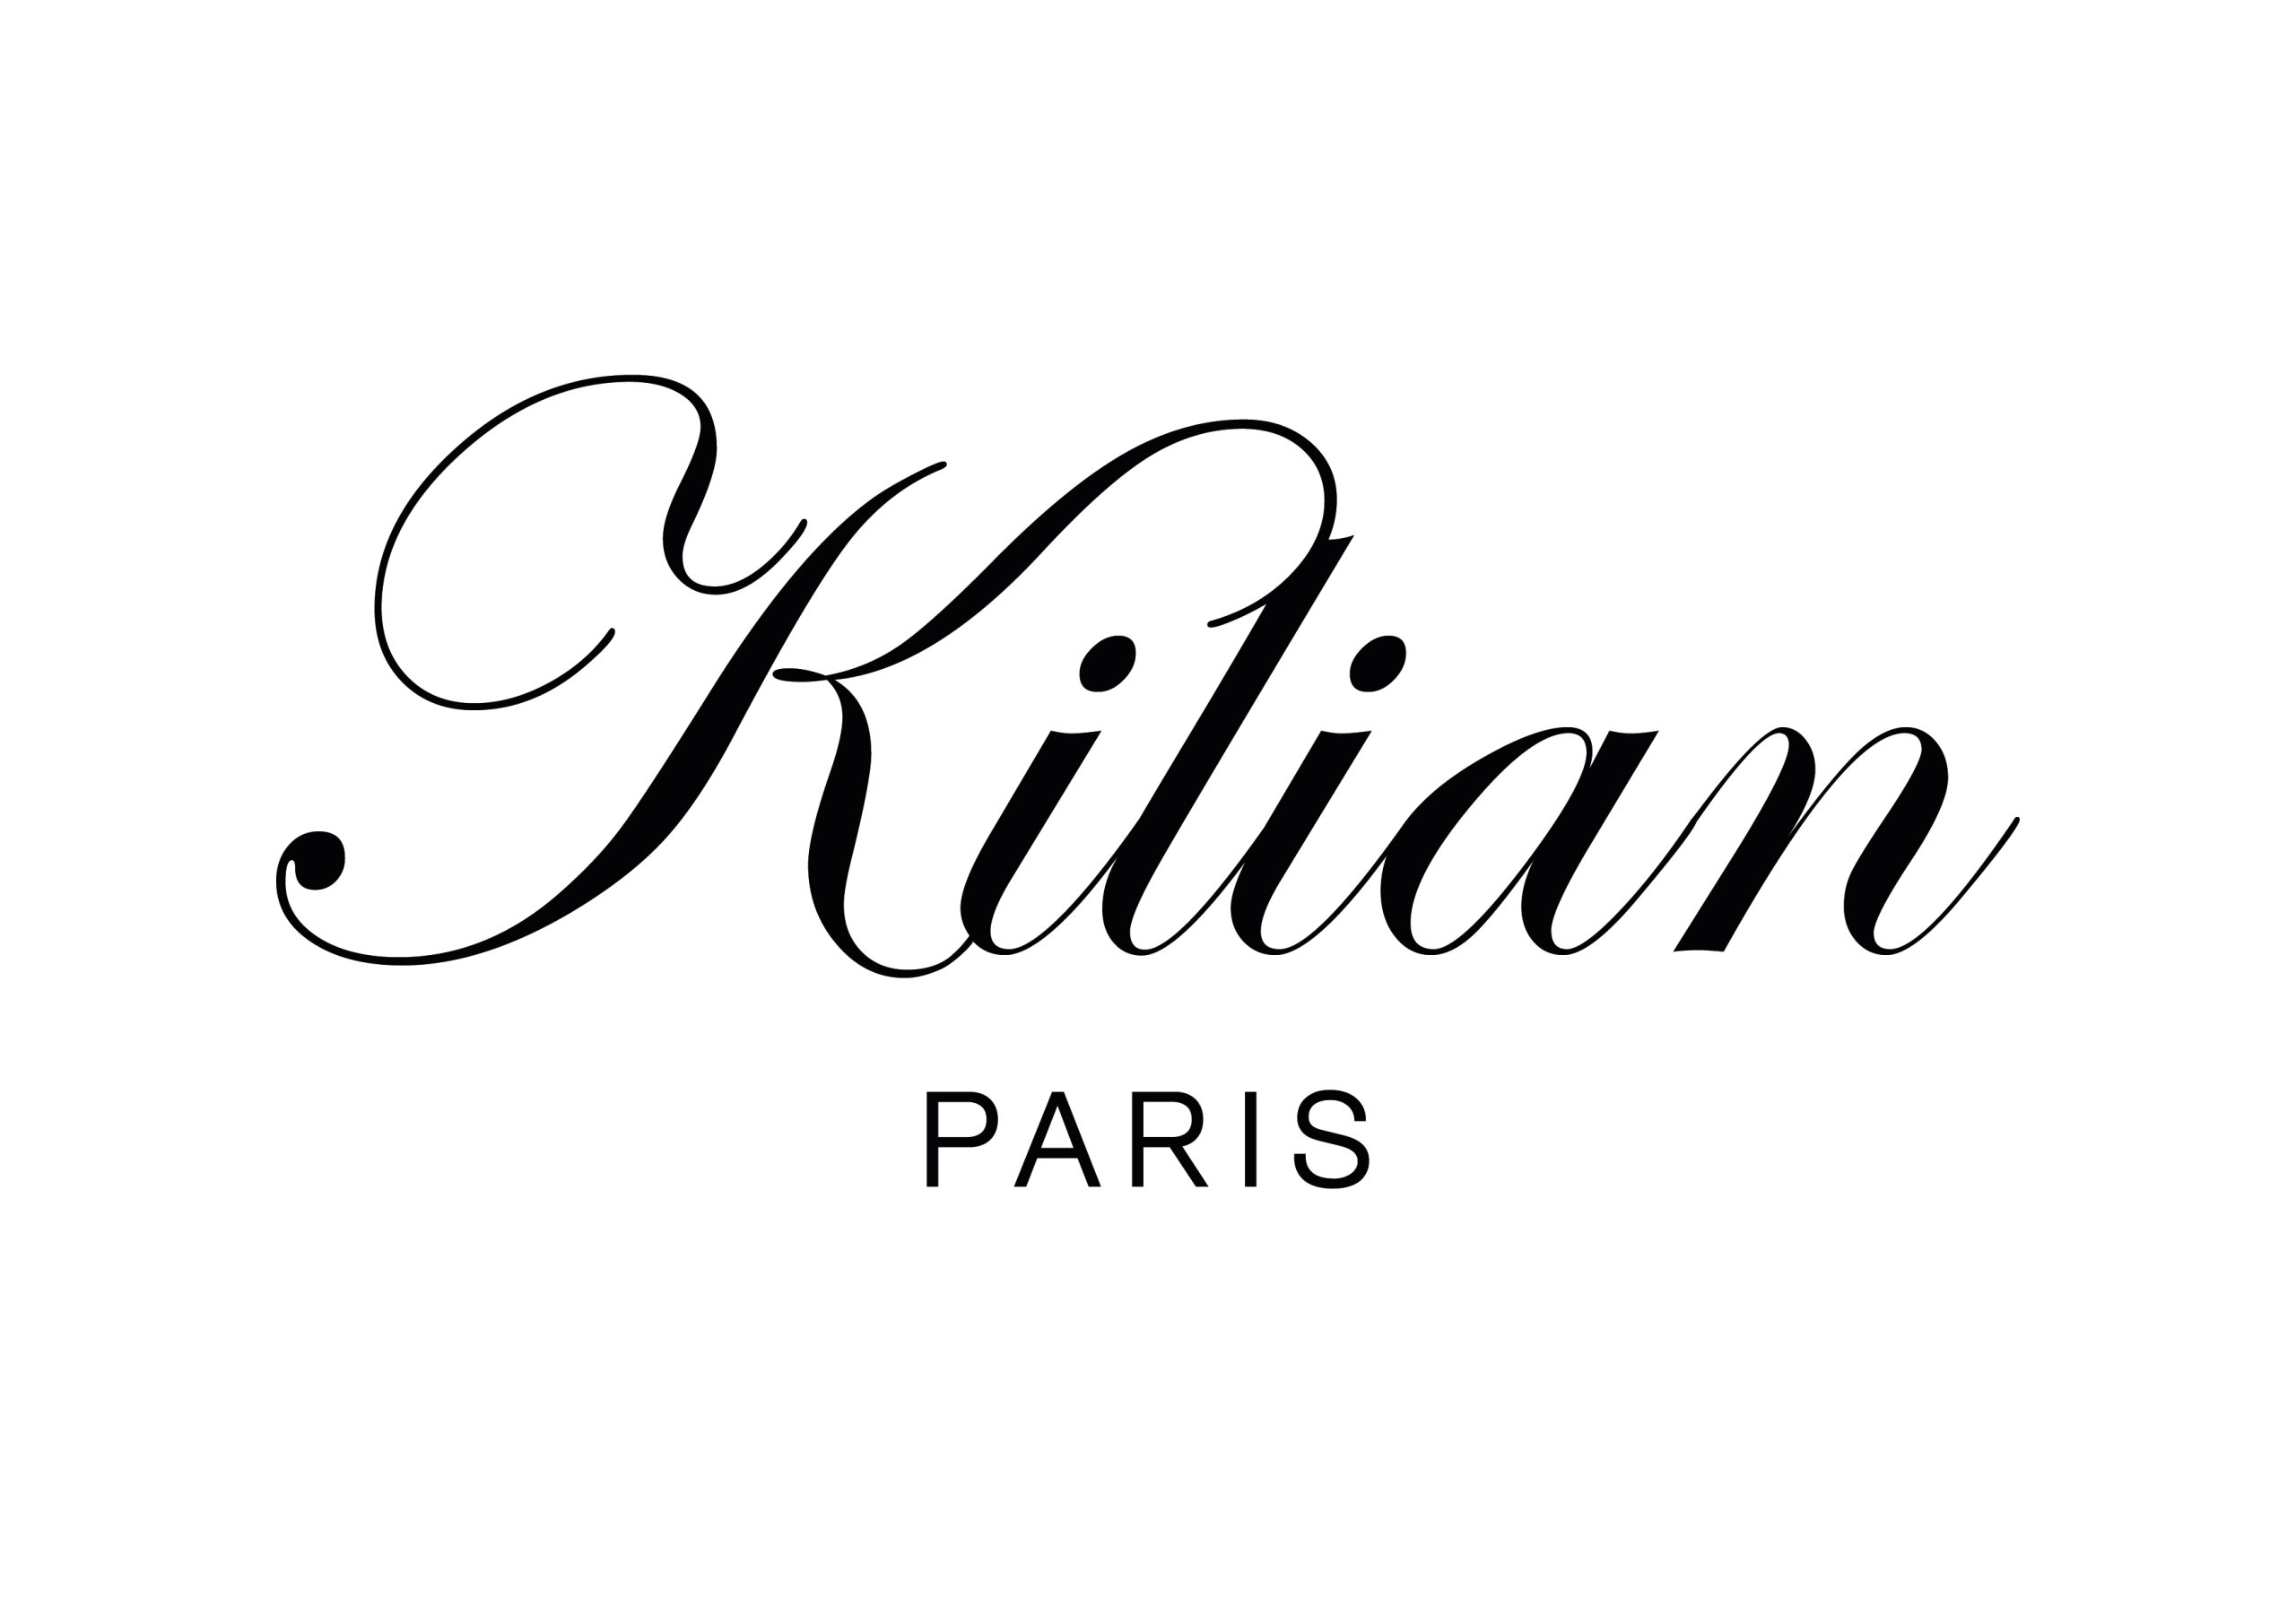 Urbani 1964 - KILIAN PARIS - Brand